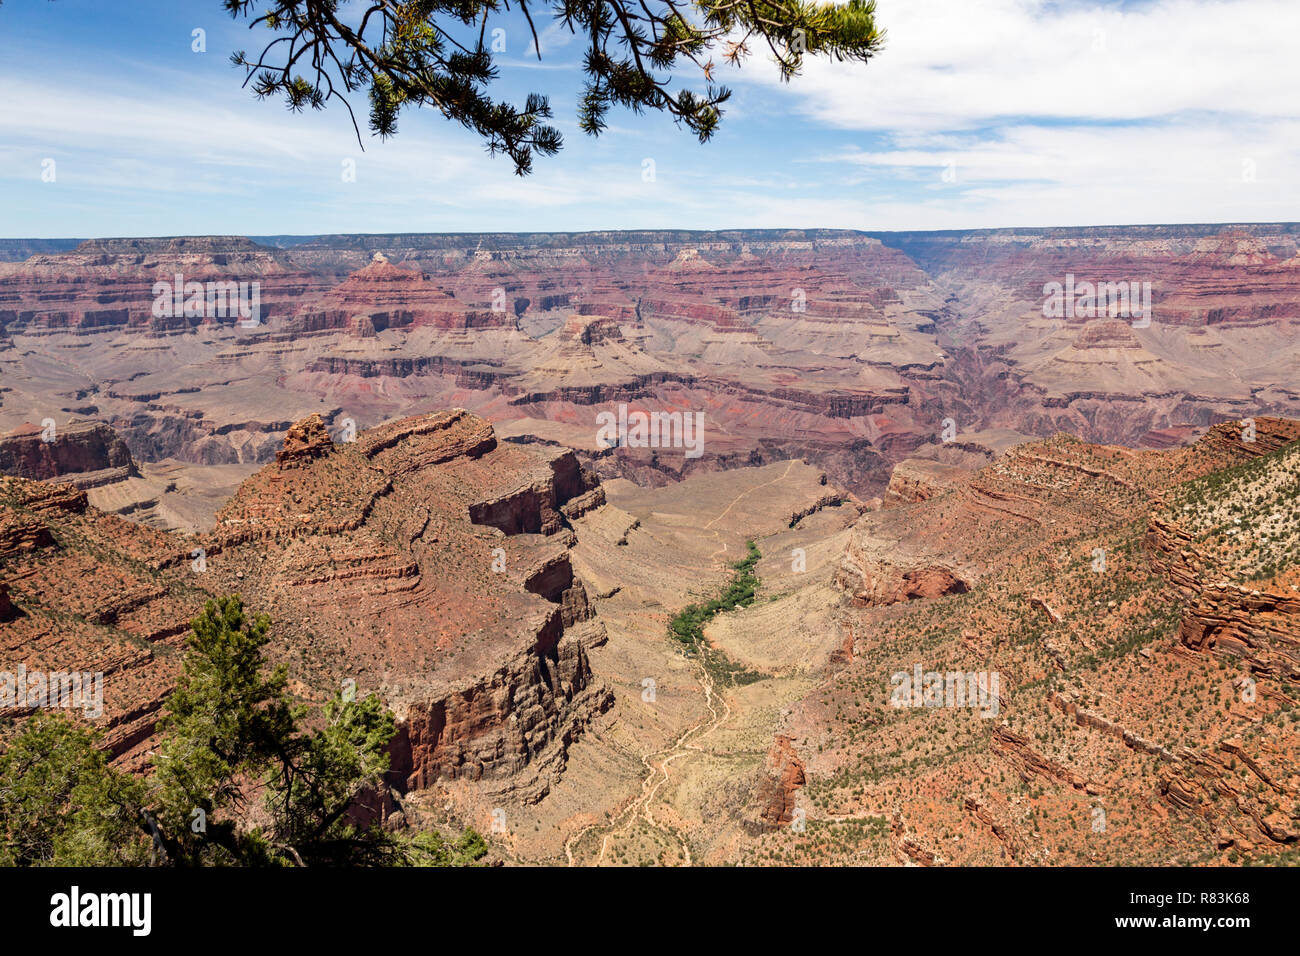 South Rim Grand canyon creusé par le fleuve Colorado dans l'Arizona, a bandes superposées de red rock révélant des millions d'années d'histoire géologique. Viewp Banque D'Images